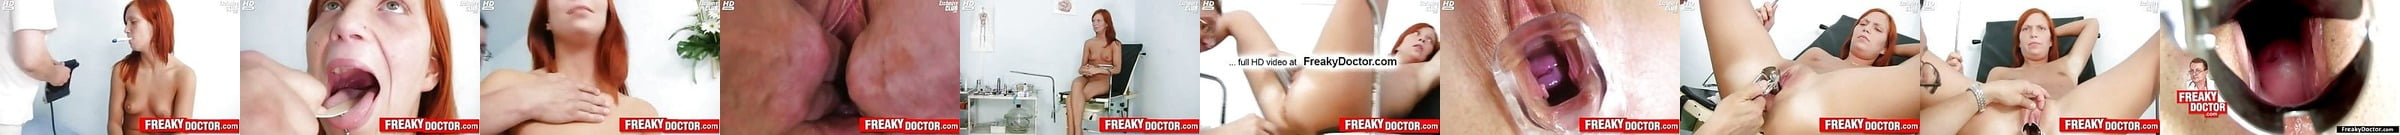 Gynecology Video Porno Xhamster